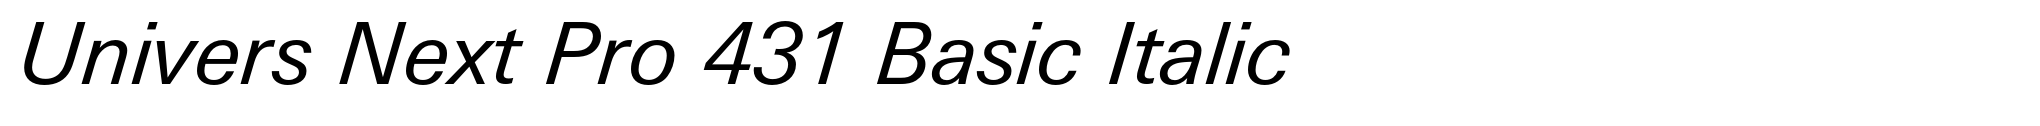 Univers Next Pro 431 Basic Italic image